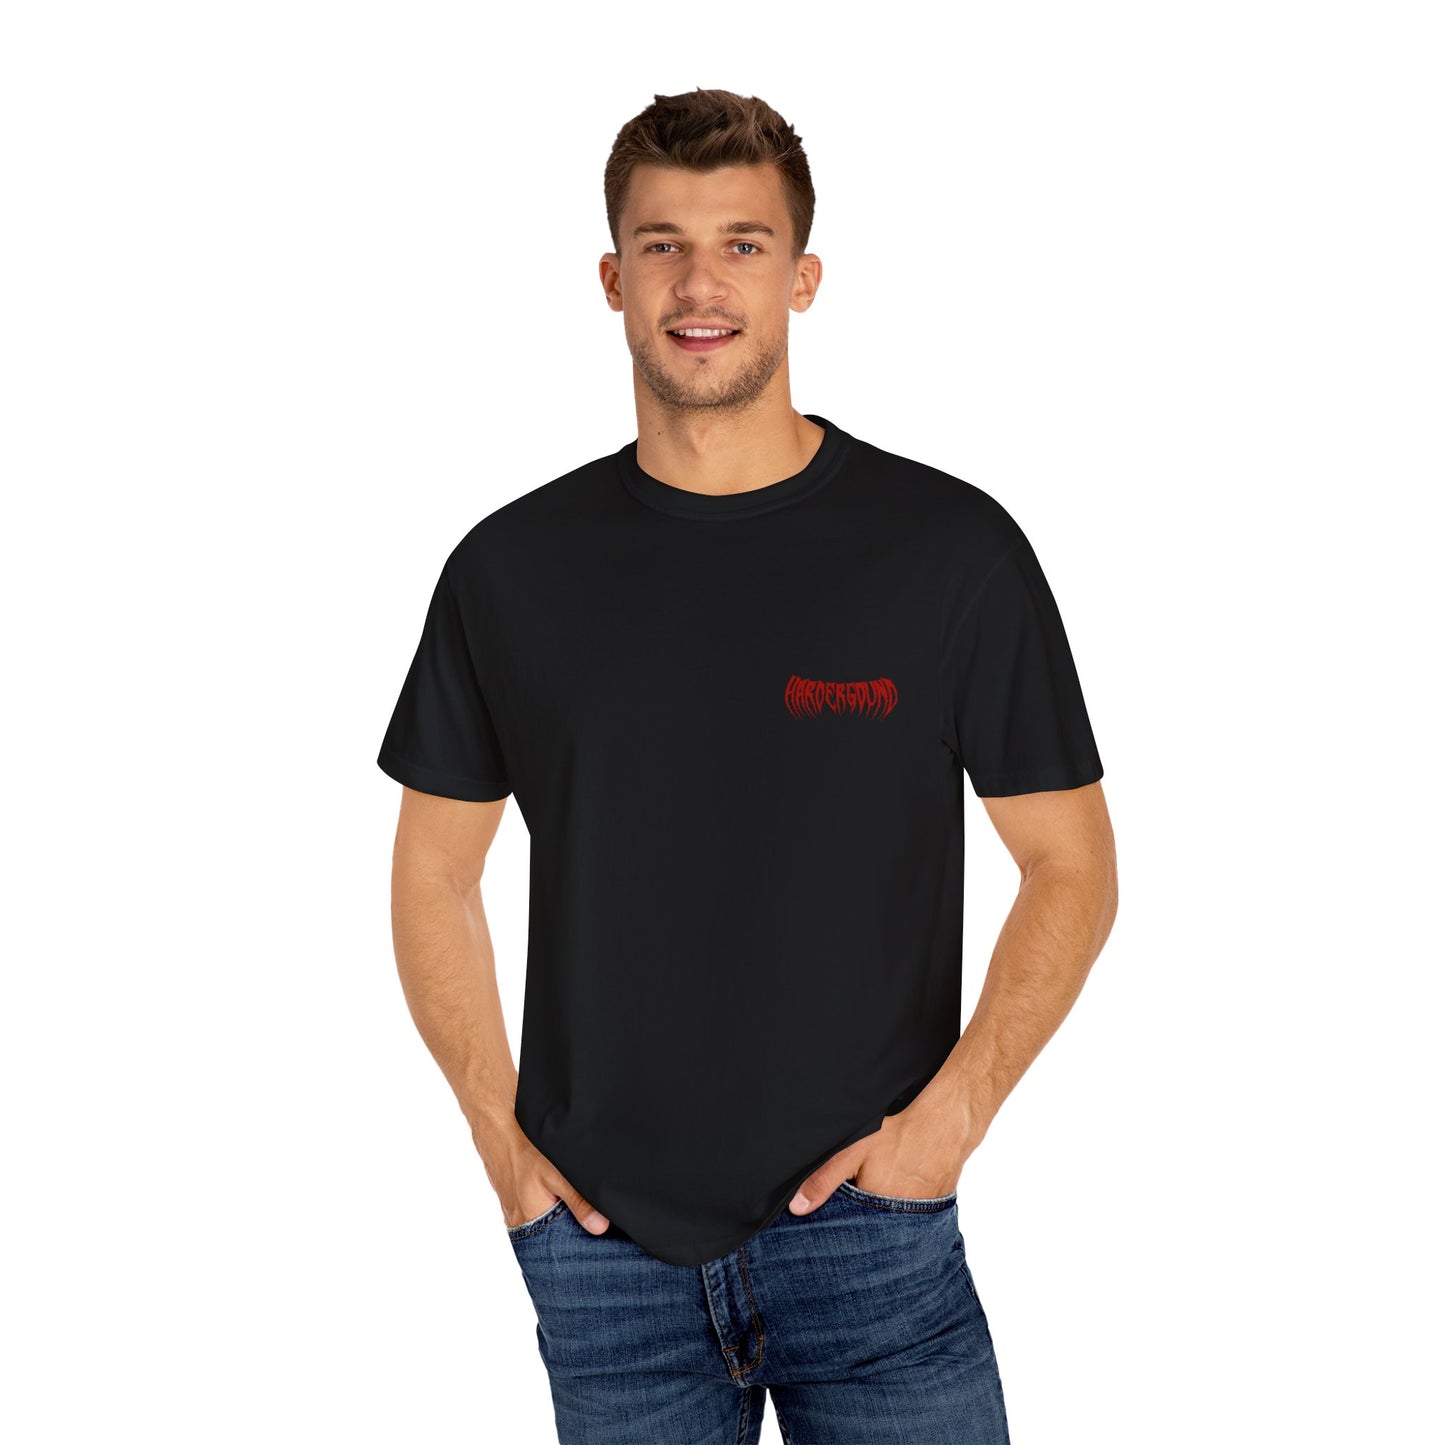 MONSTER - Unisex Garment-Dyed T-shirt - front & back logo